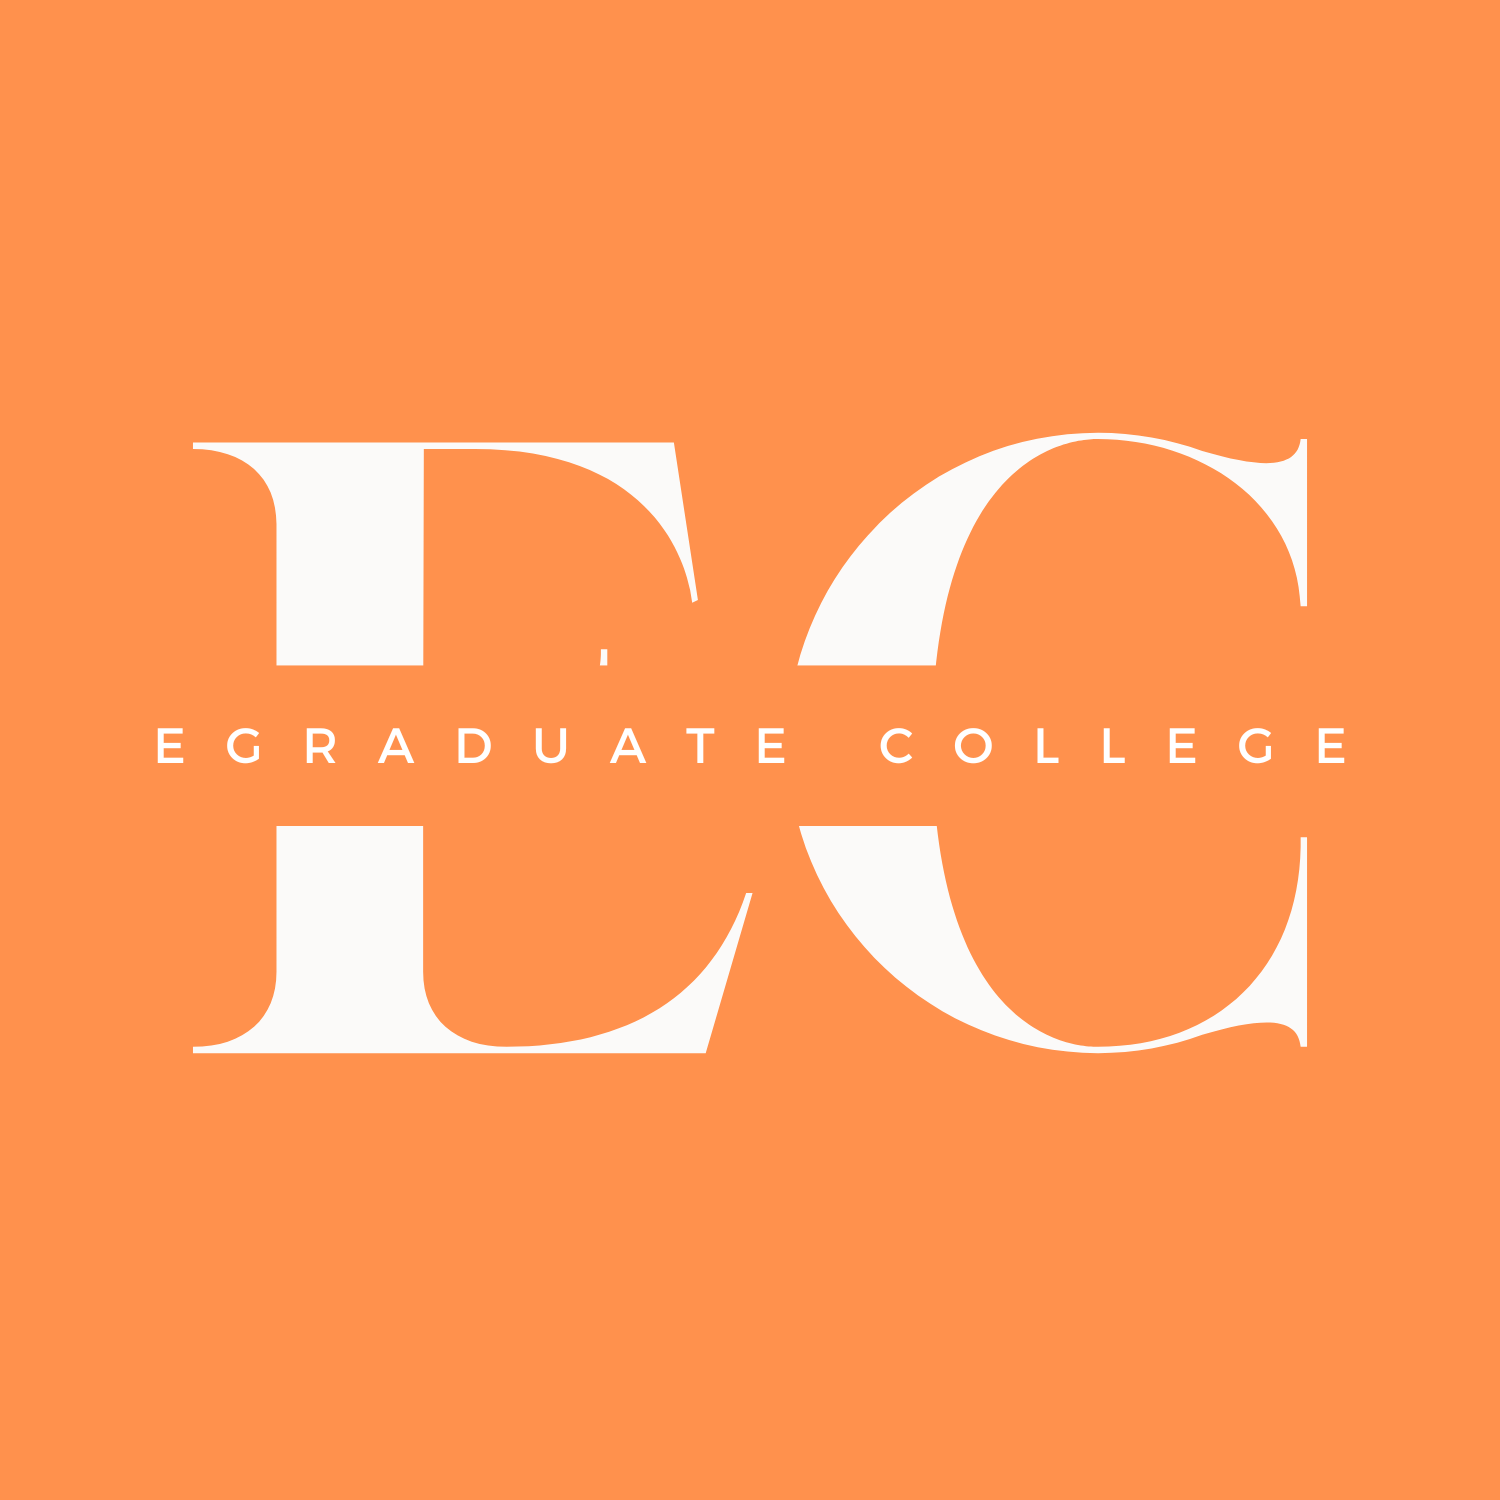 Egraduate College logo